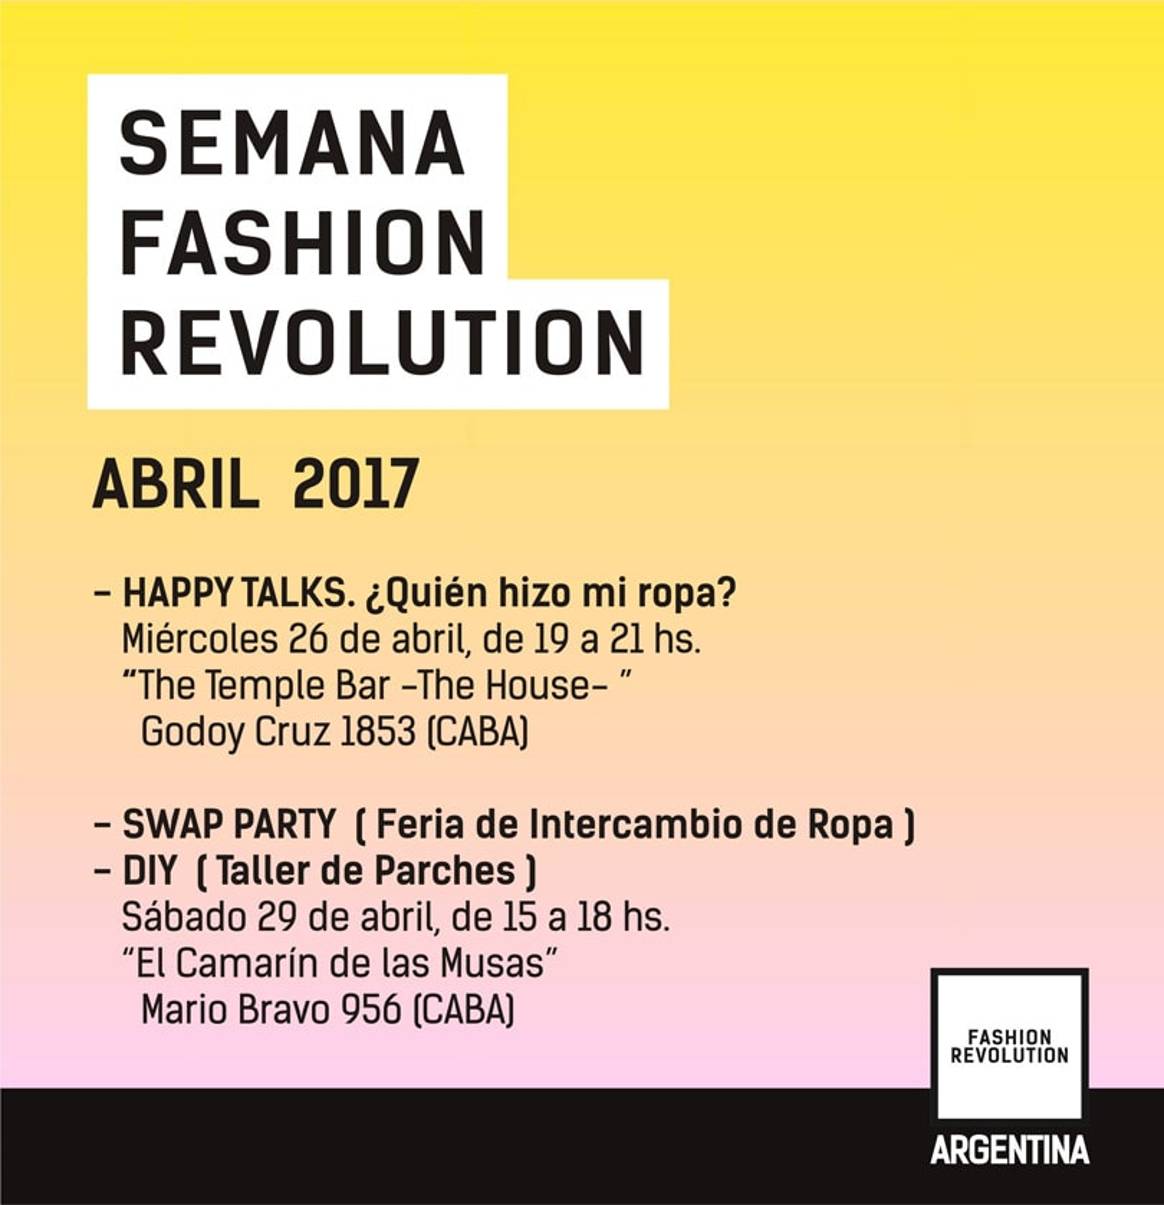 ¿Quién hizo mi ropa?: La propuesta de Fashion Revolution Argentina